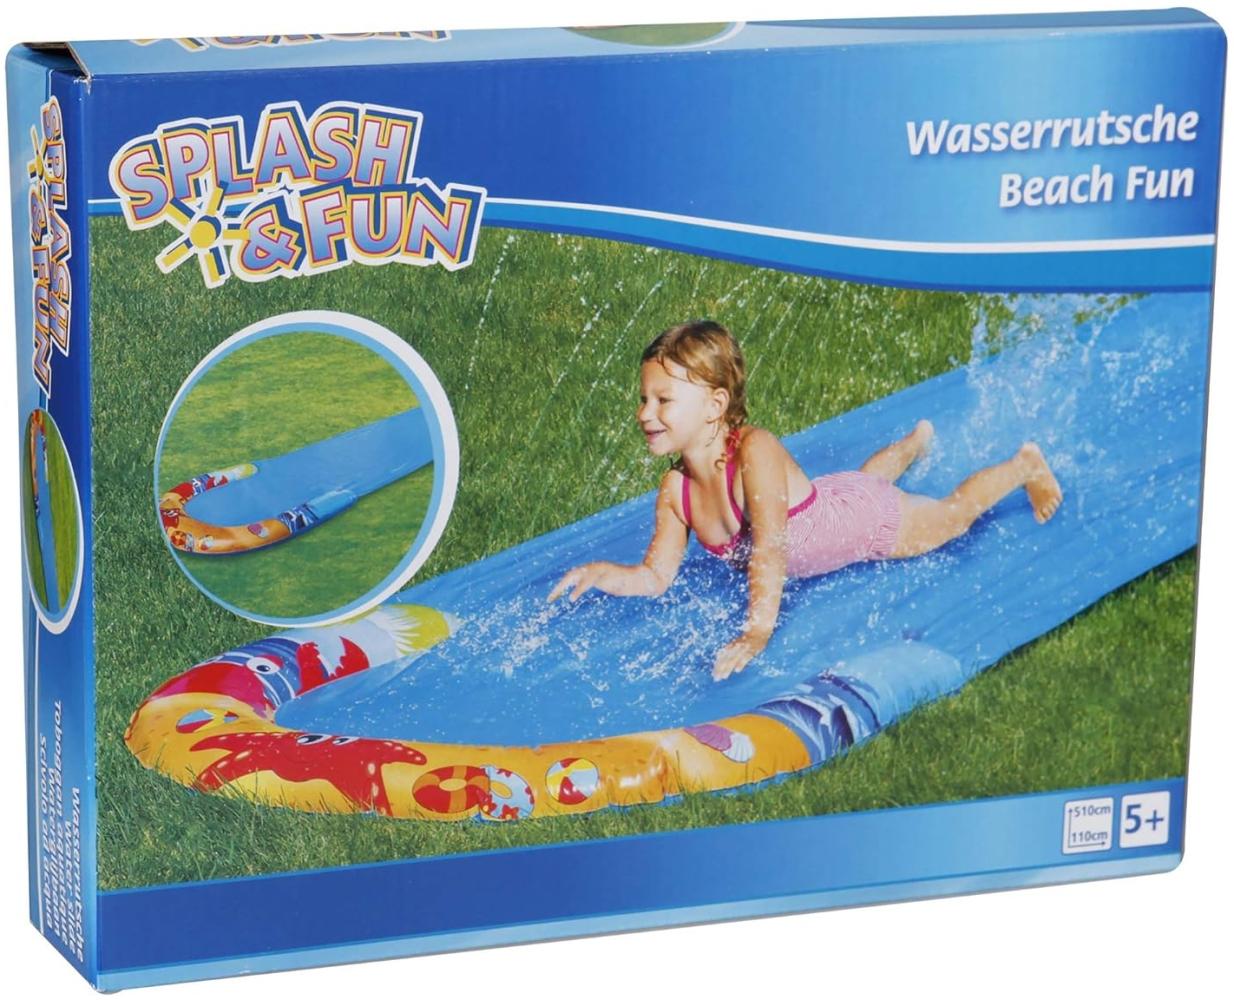 Splash & Fun Wasserrutsche Beach Fun, 510 x 110 cm Bild 1